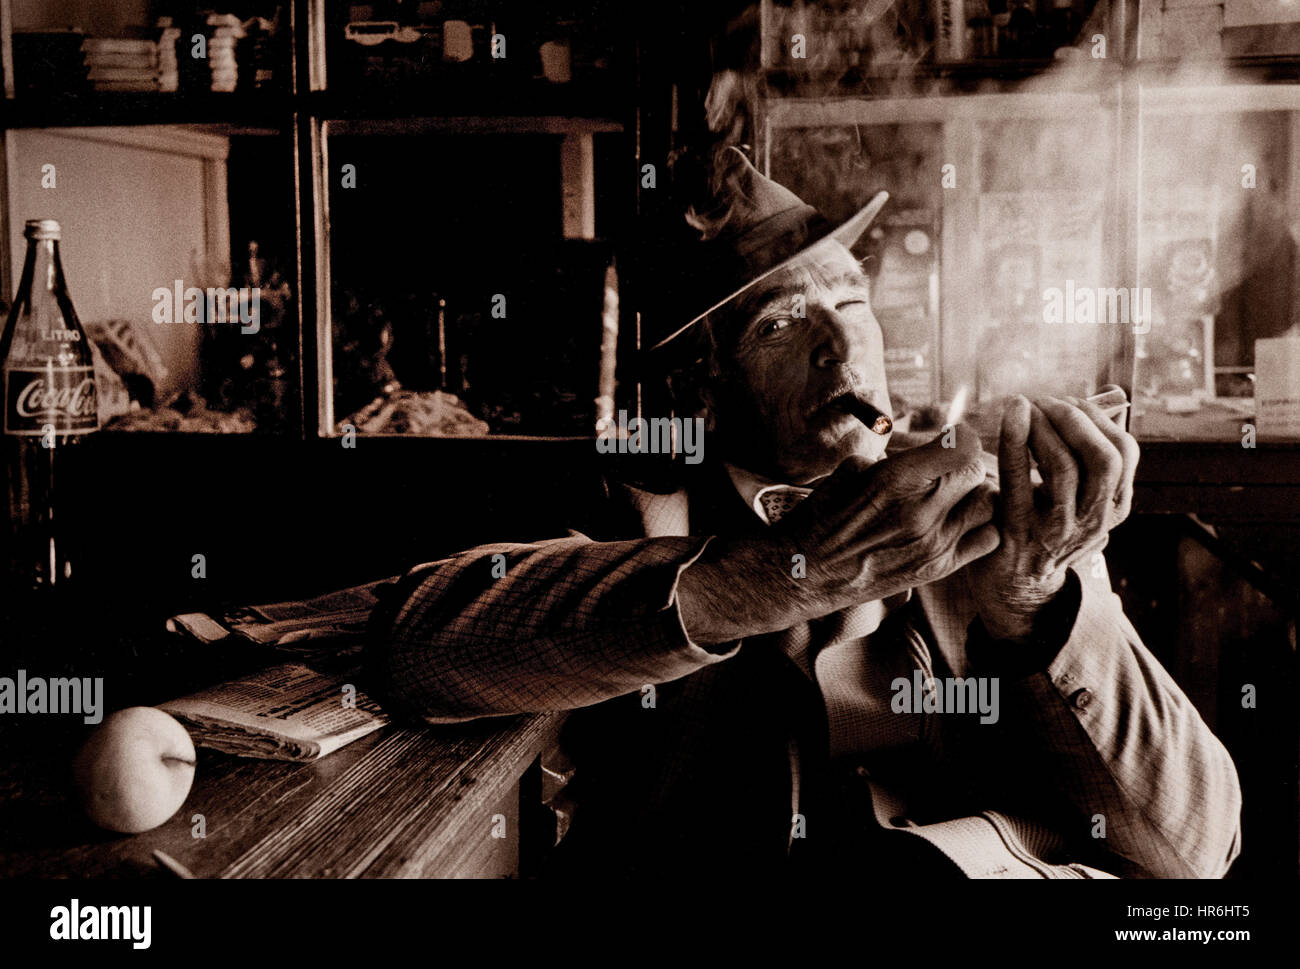 Frappez un cigare mûr dans un bar rustique photographié sur le film Kodak tri-X rétro reportage étude de l'homme espagnol mature avec chapeau éclairant un cigare dans un bar local Banque D'Images